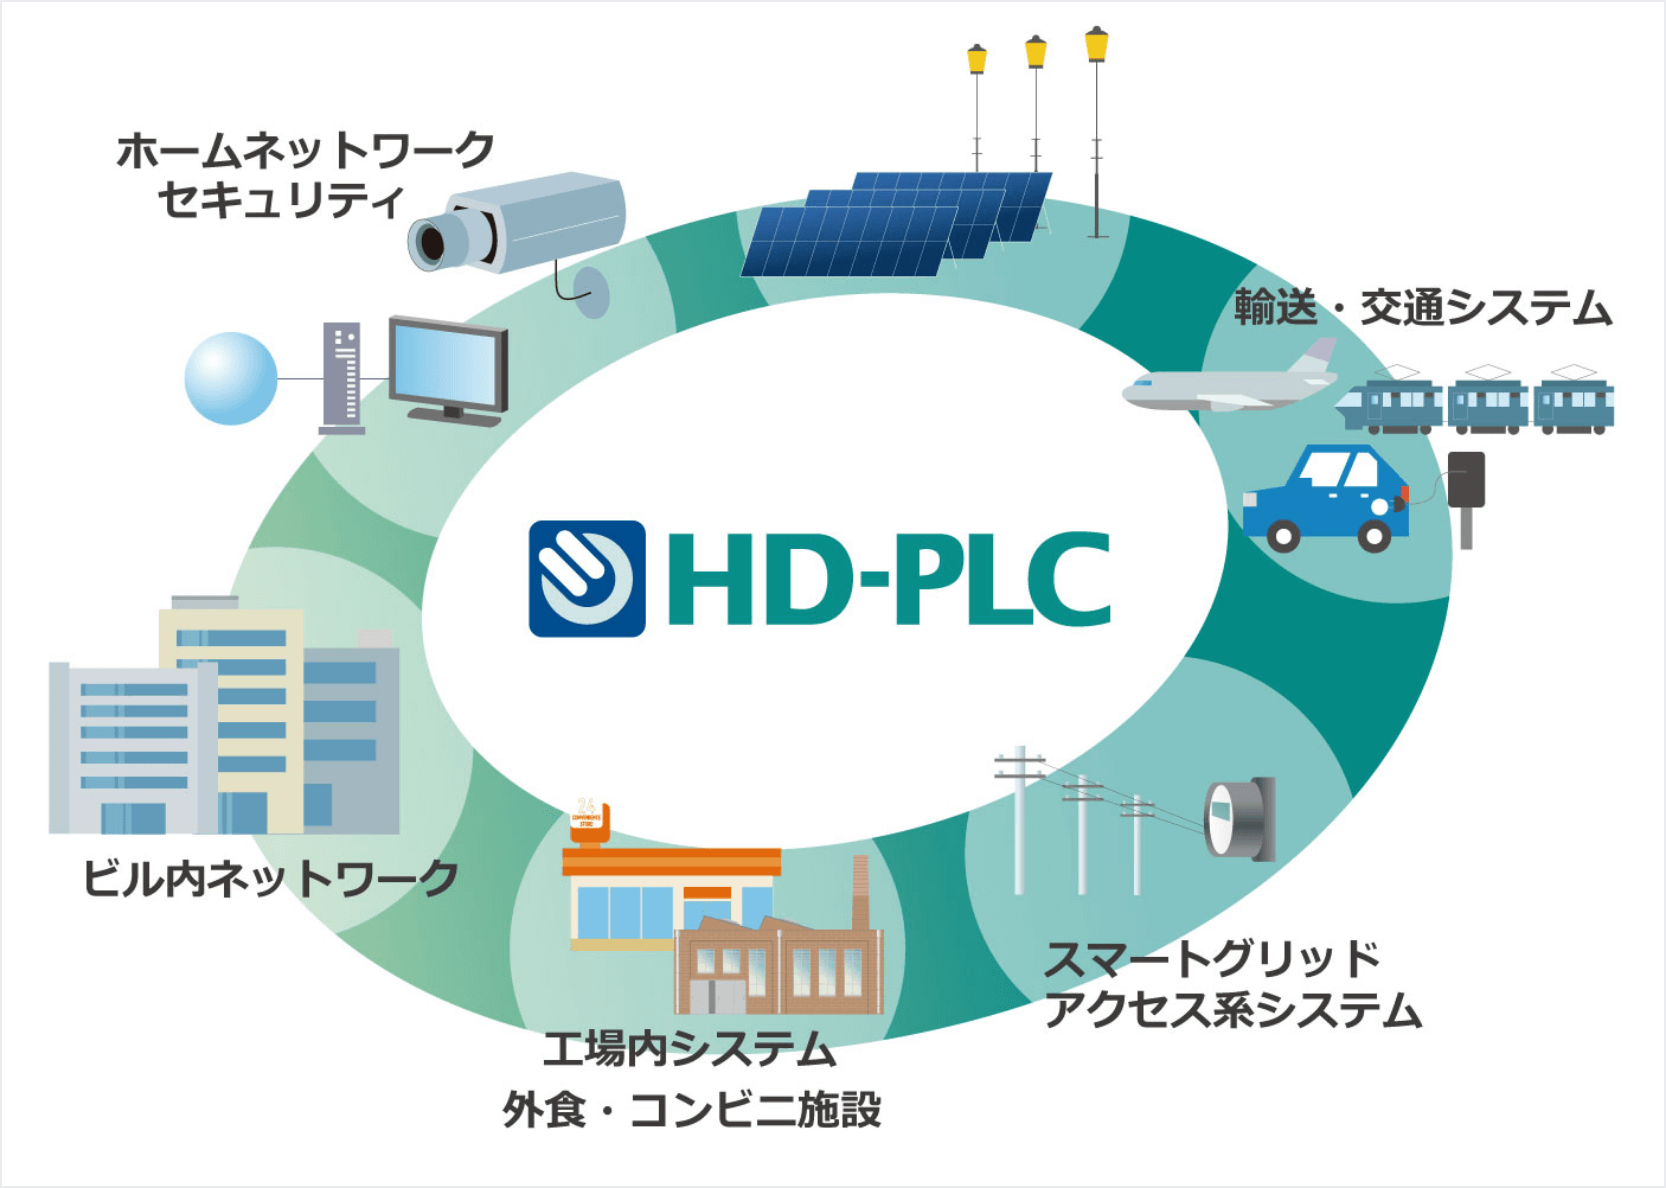 HD-PLCの普及拡大やHD-PLCを採用した製品イメージ